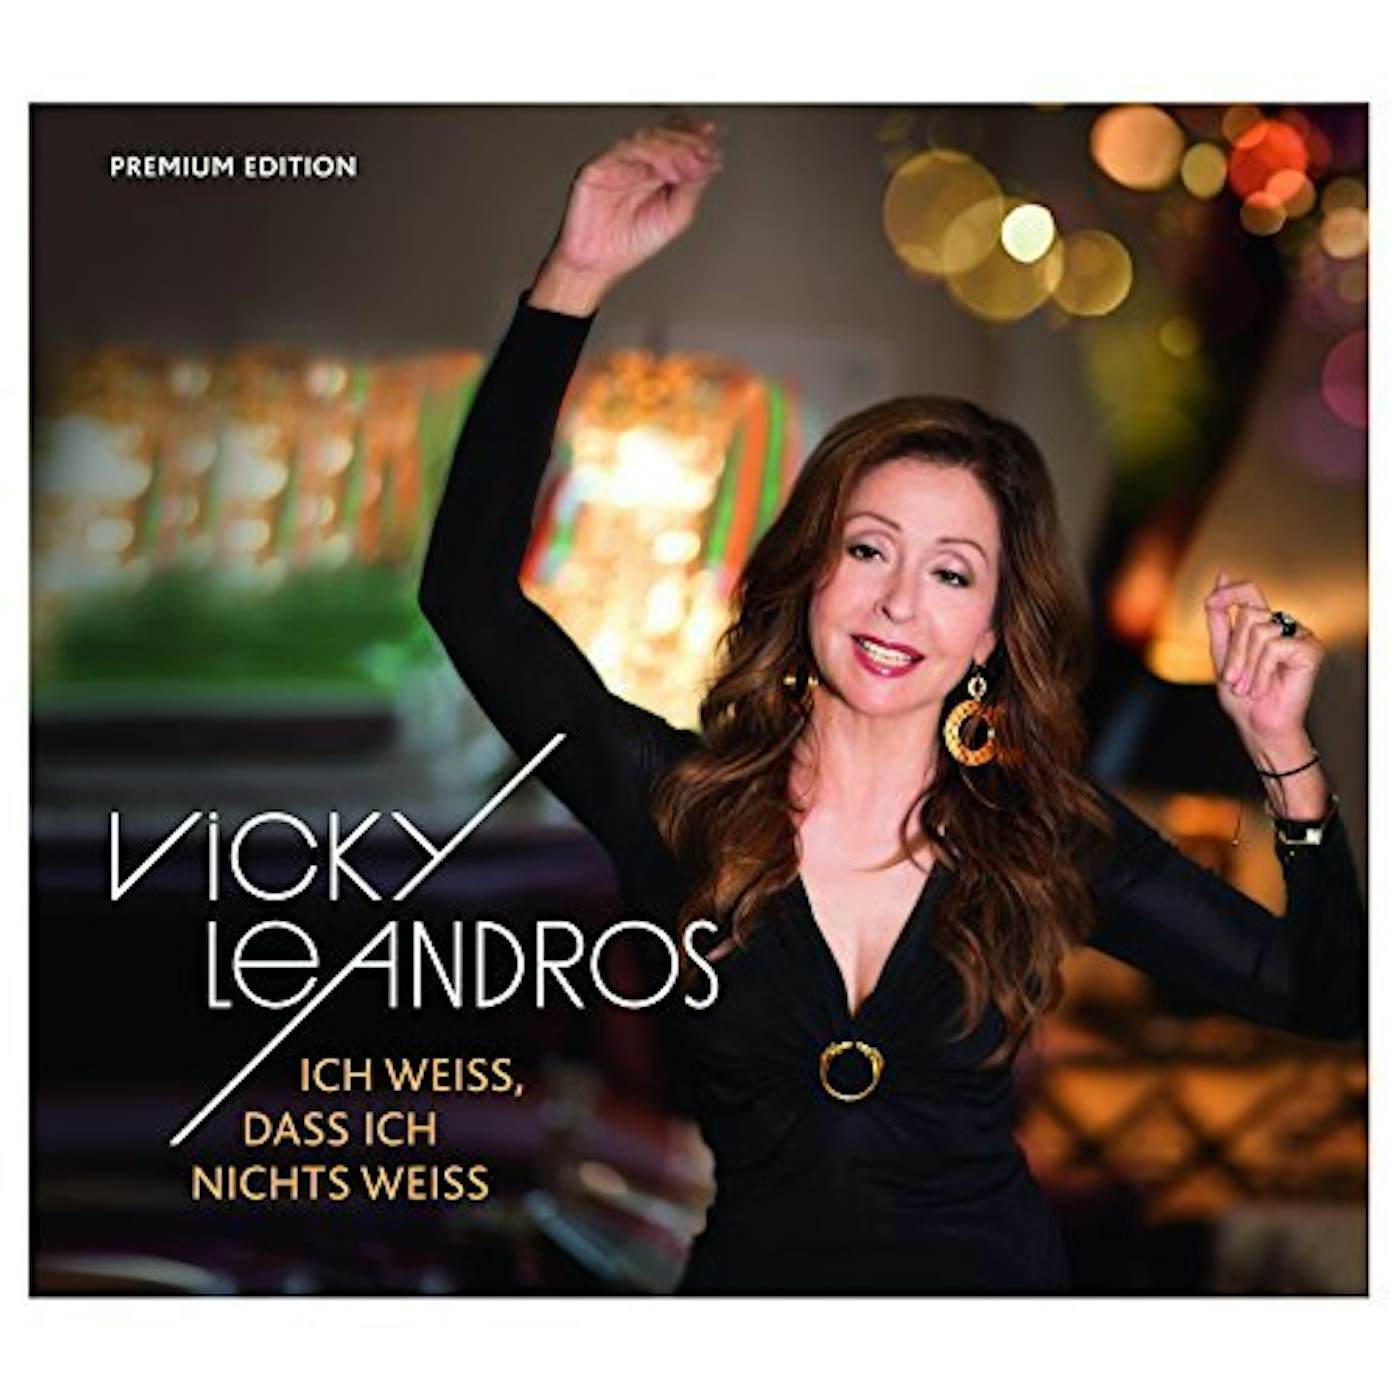 Vicky Leandros ICH WEISS DASS ICH NICHTS WEISS (PREMIUM) CD